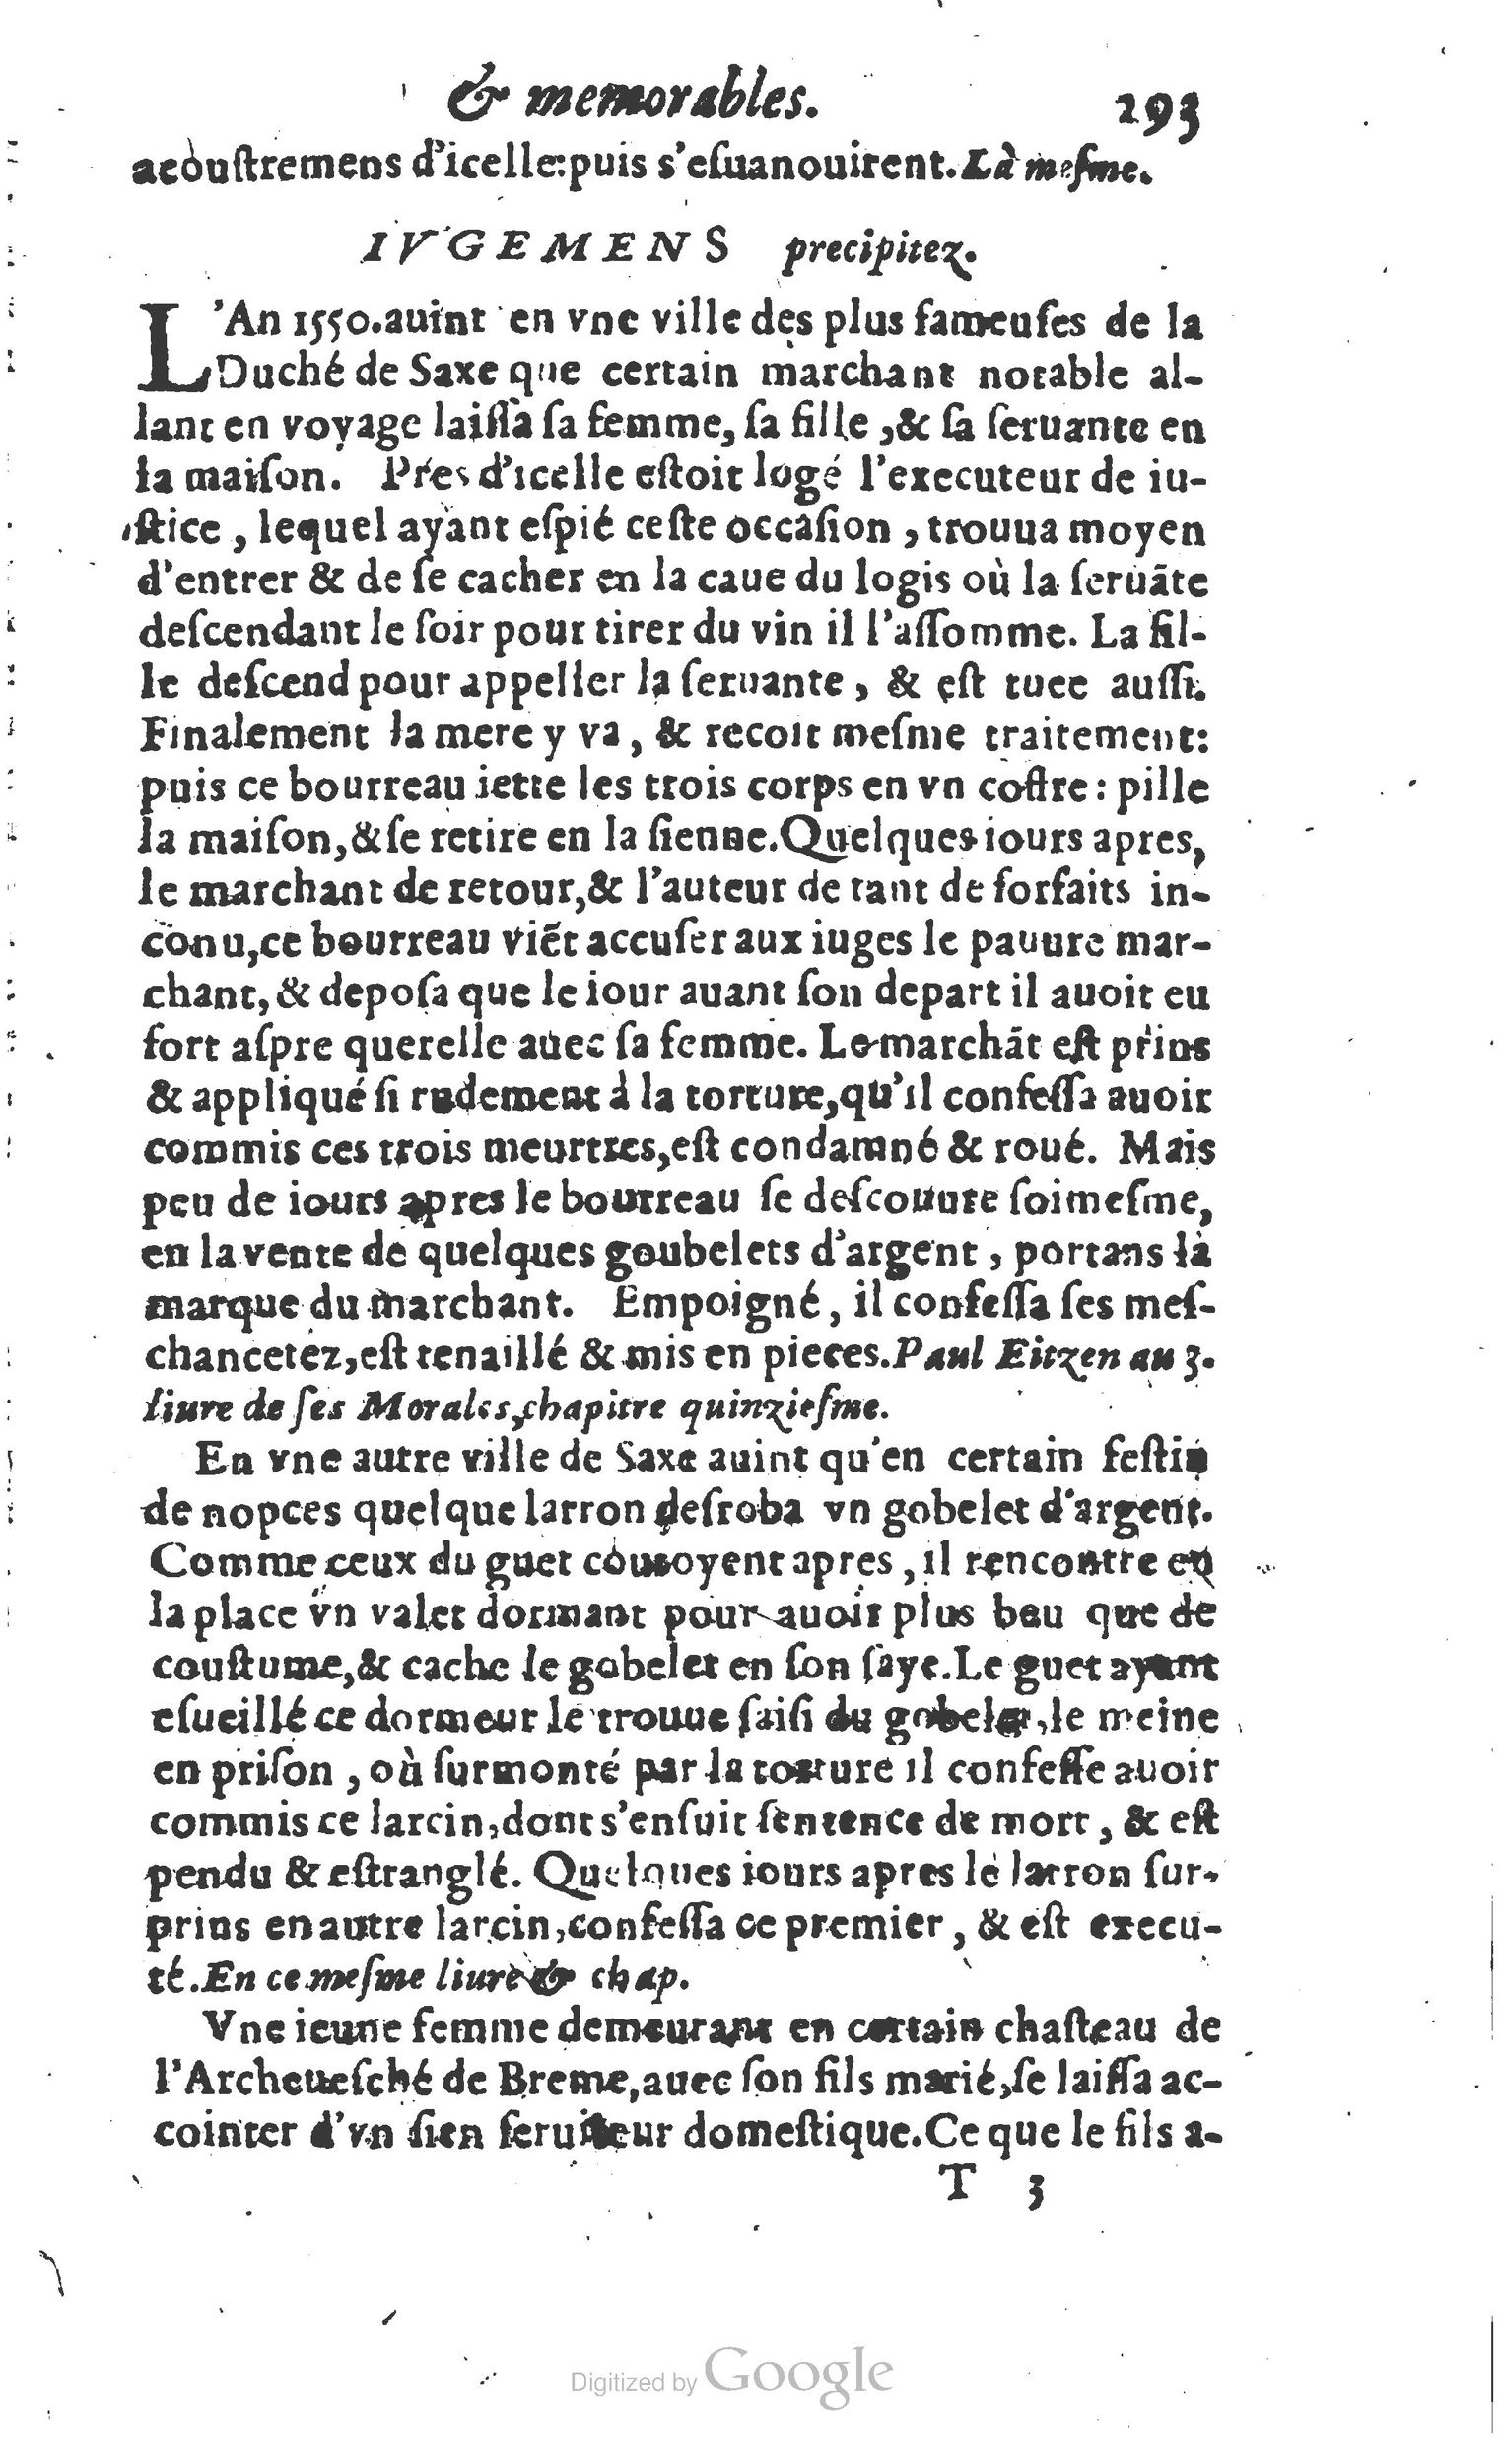 1610 Trésor d’histoires admirables et mémorables de nostre temps Marceau Princeton_Page_0314.jpg